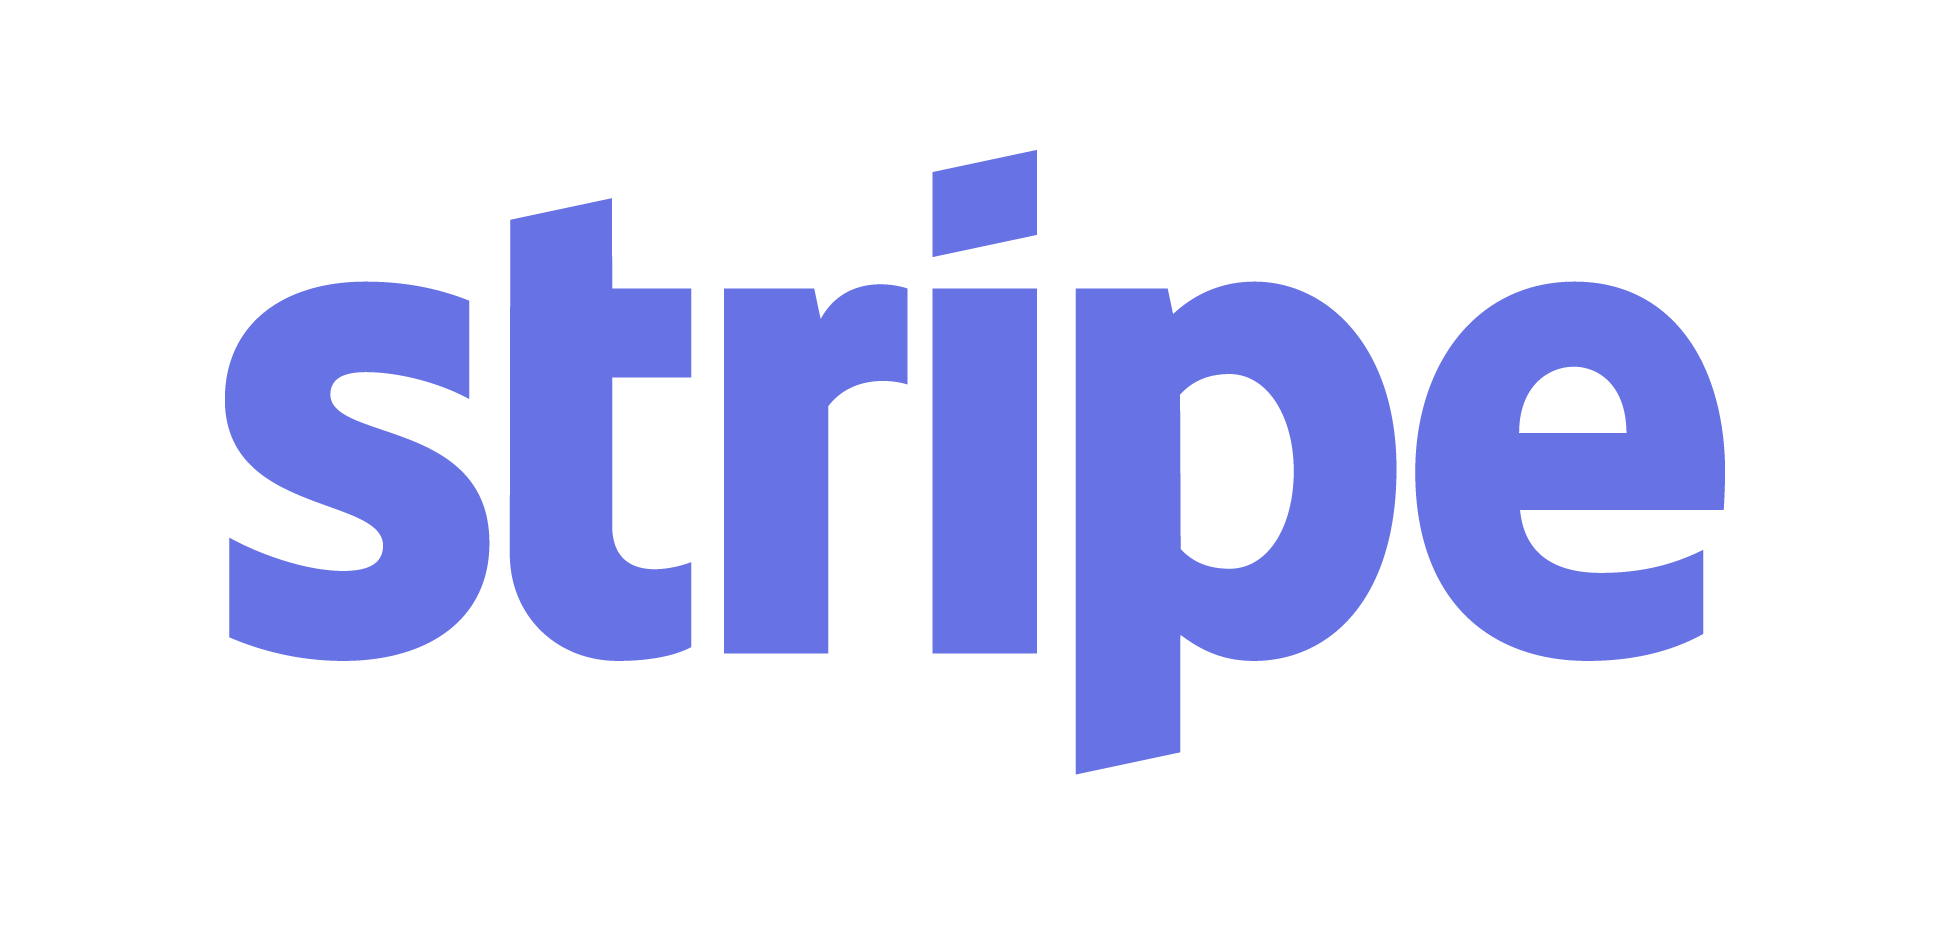 Blue Stripe Logo - File:Stripe logo, revised 2016.png